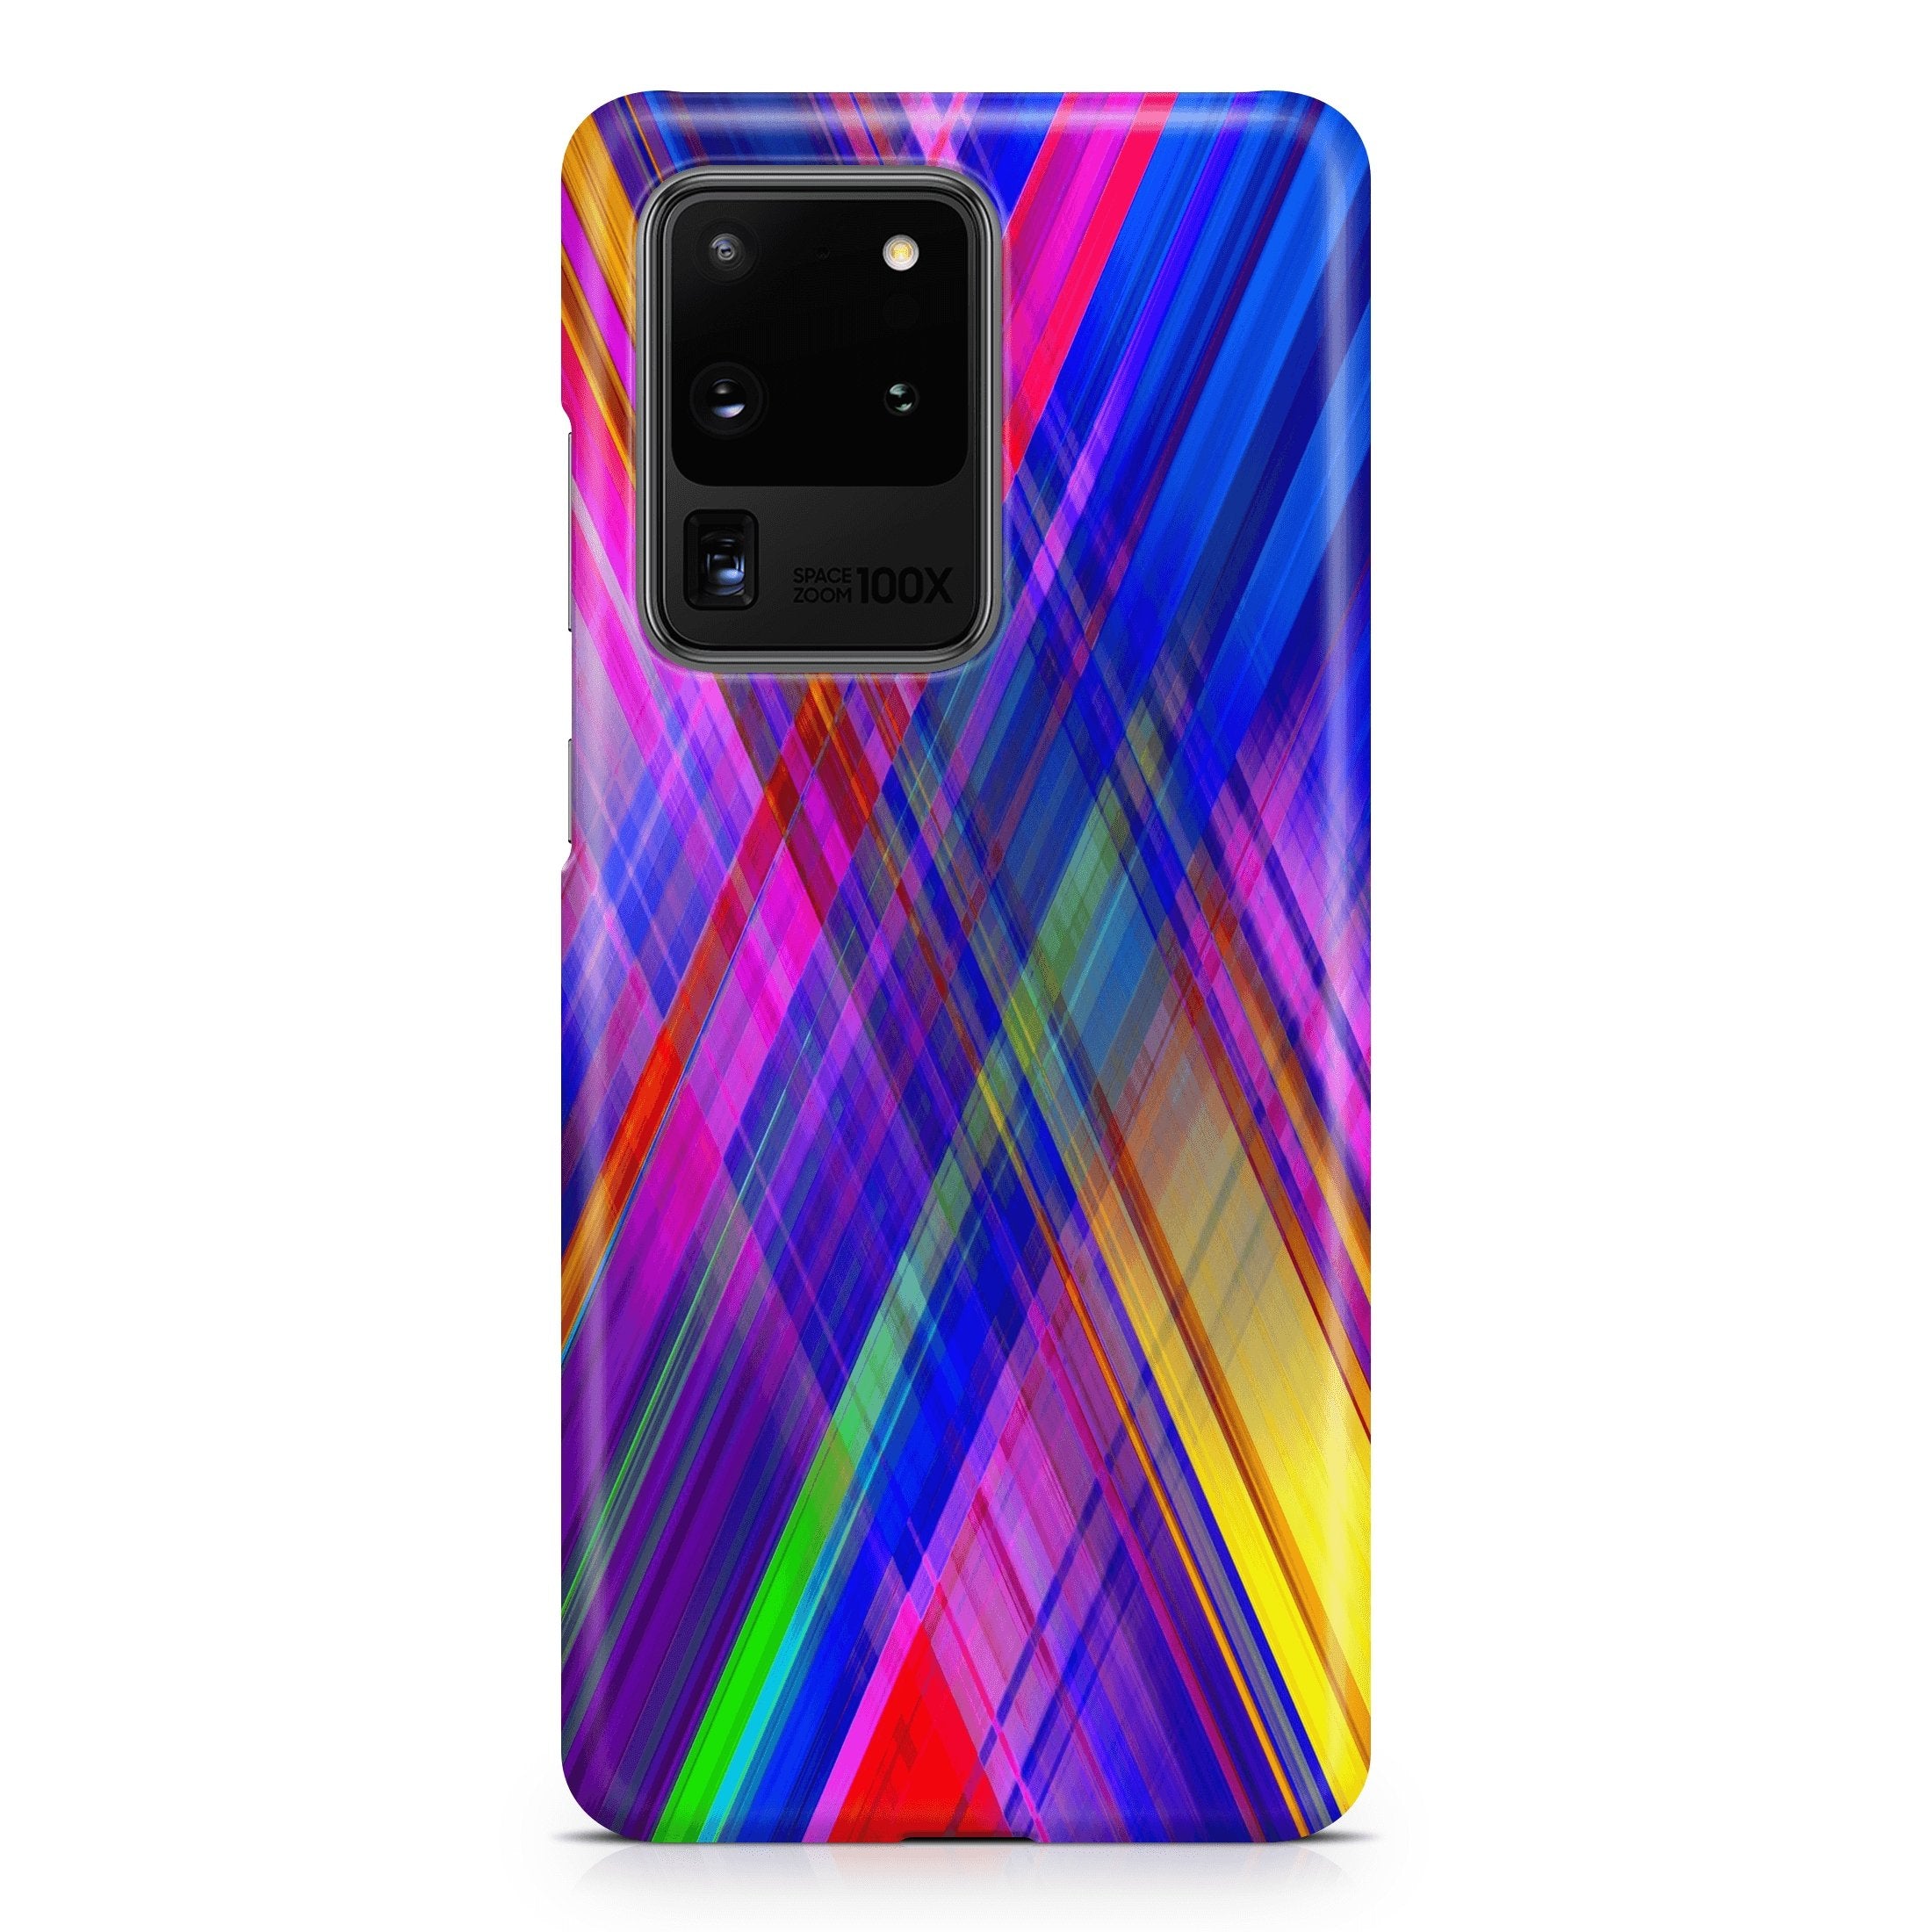 Apex Vertigo - Samsung phone case designs by CaseSwagger